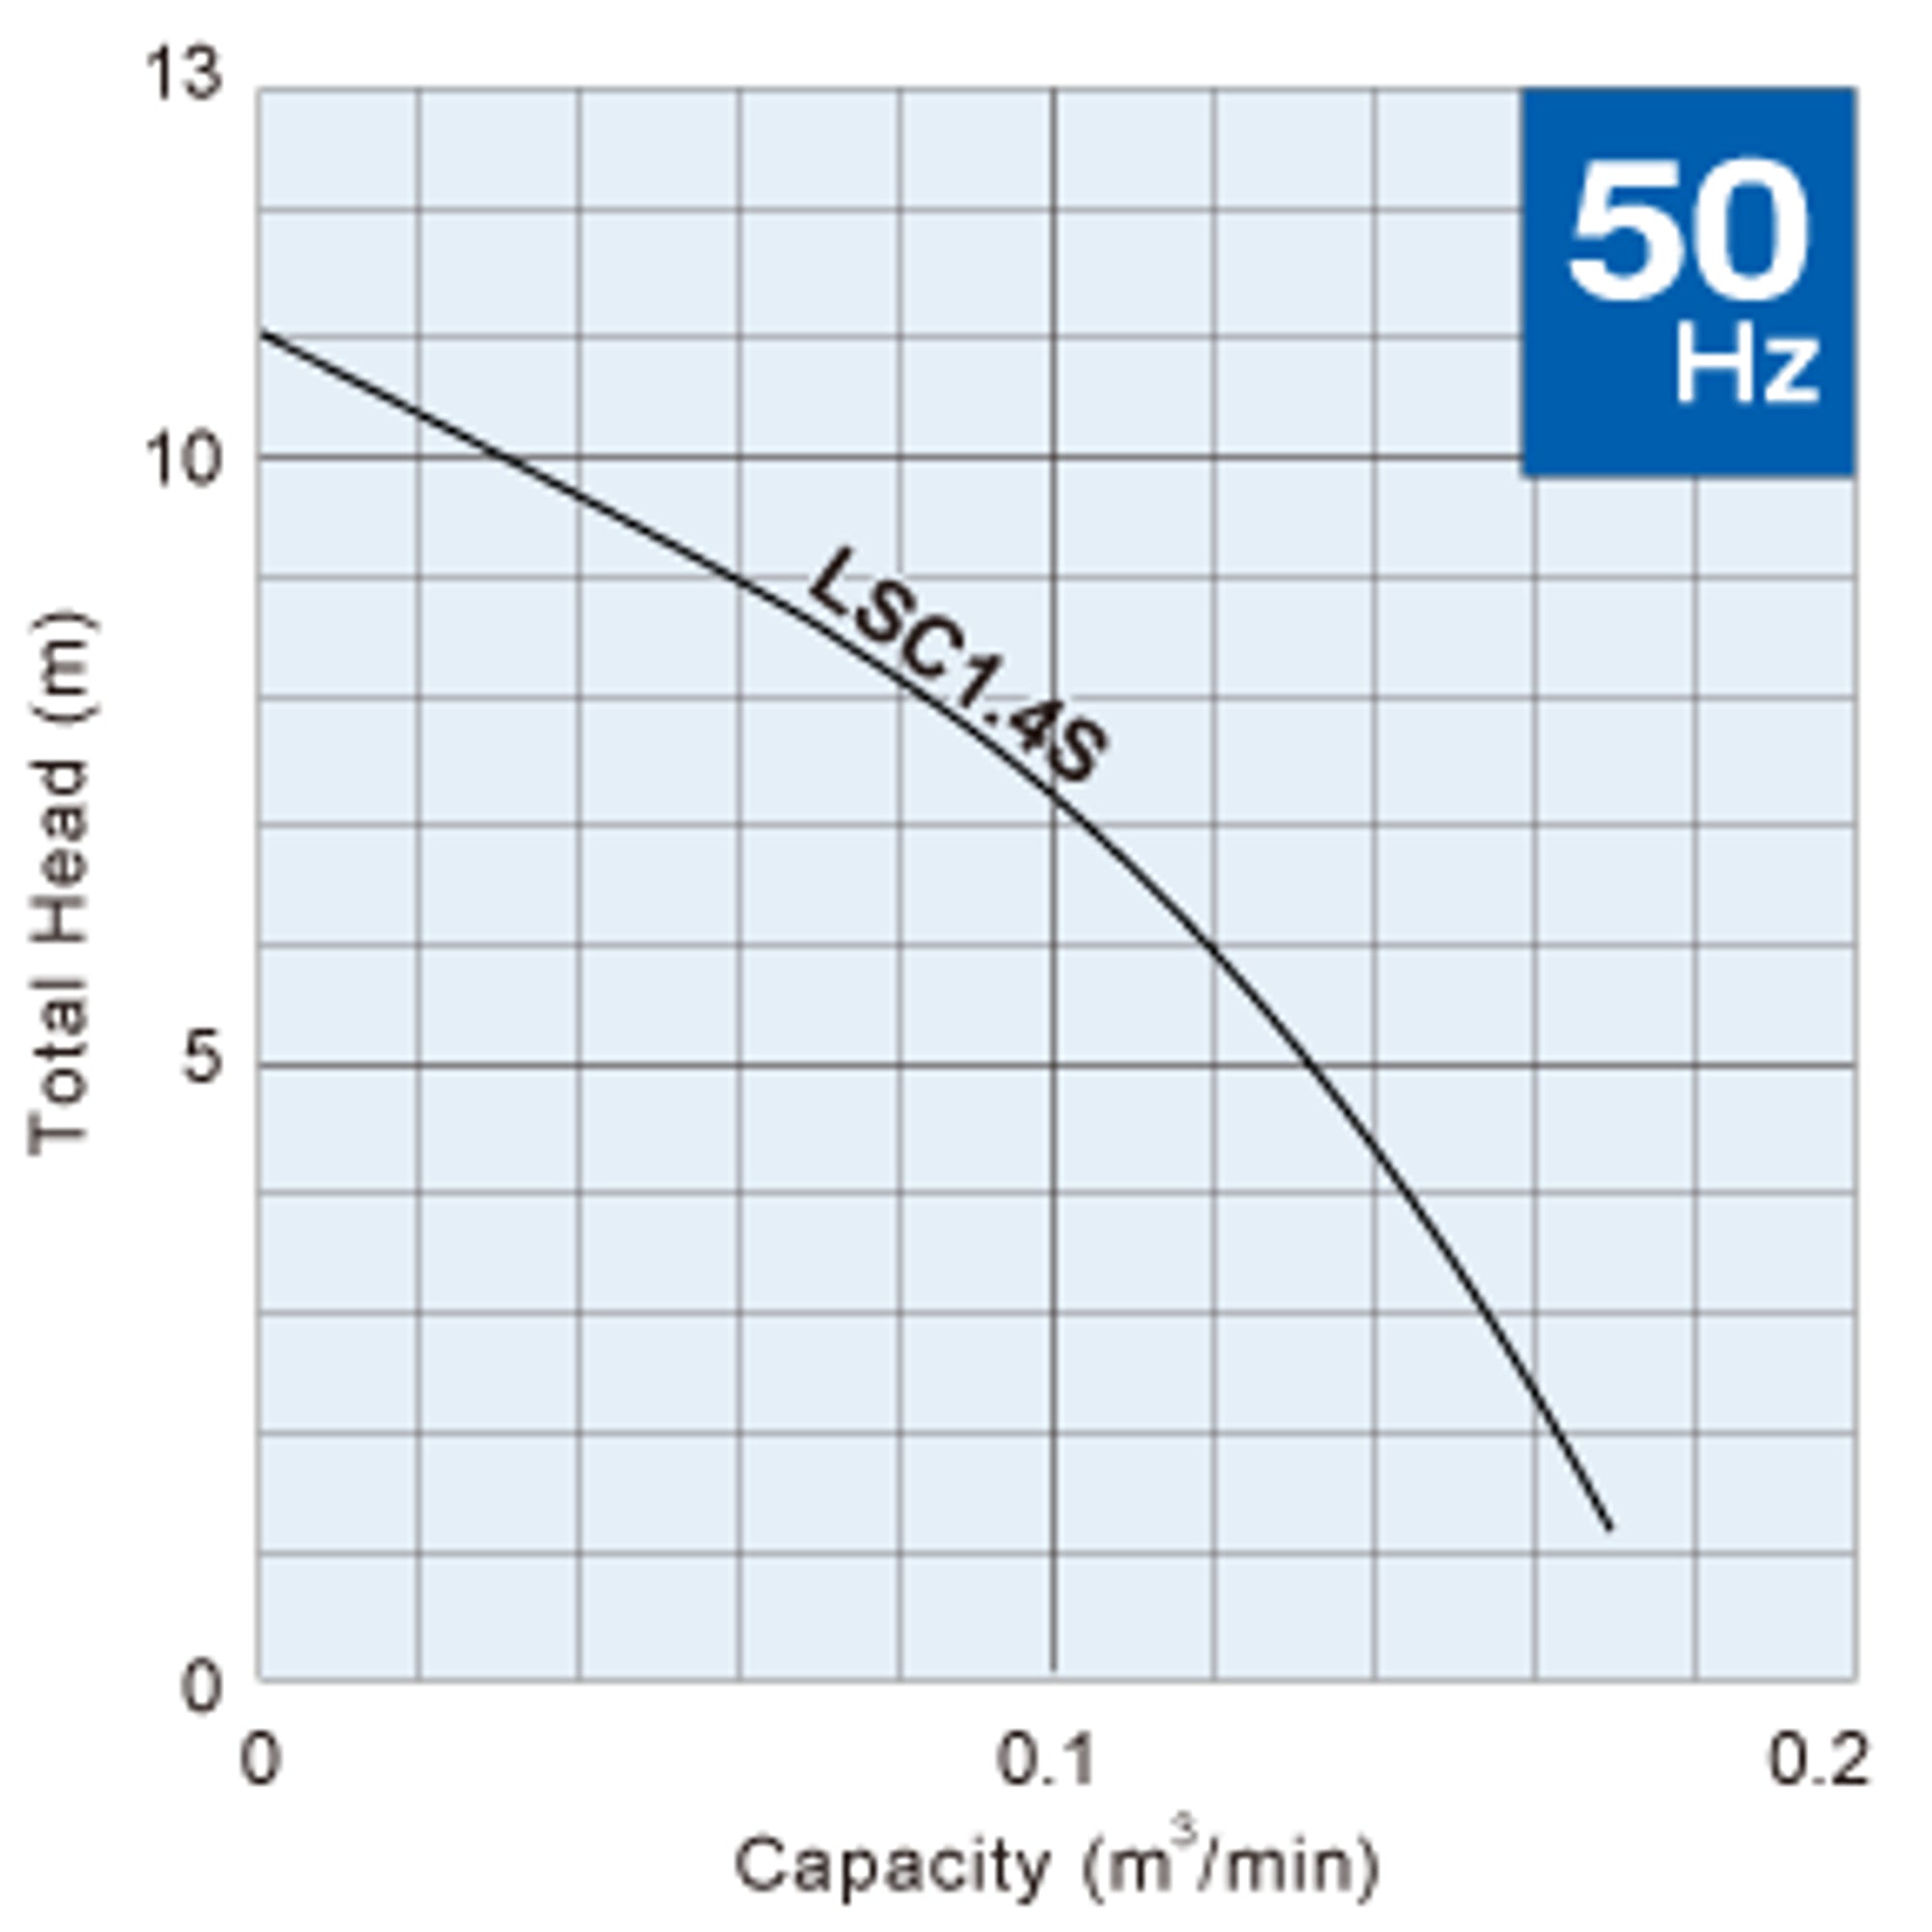 LSC1.4S tsurumi puddle pump performance flow curve